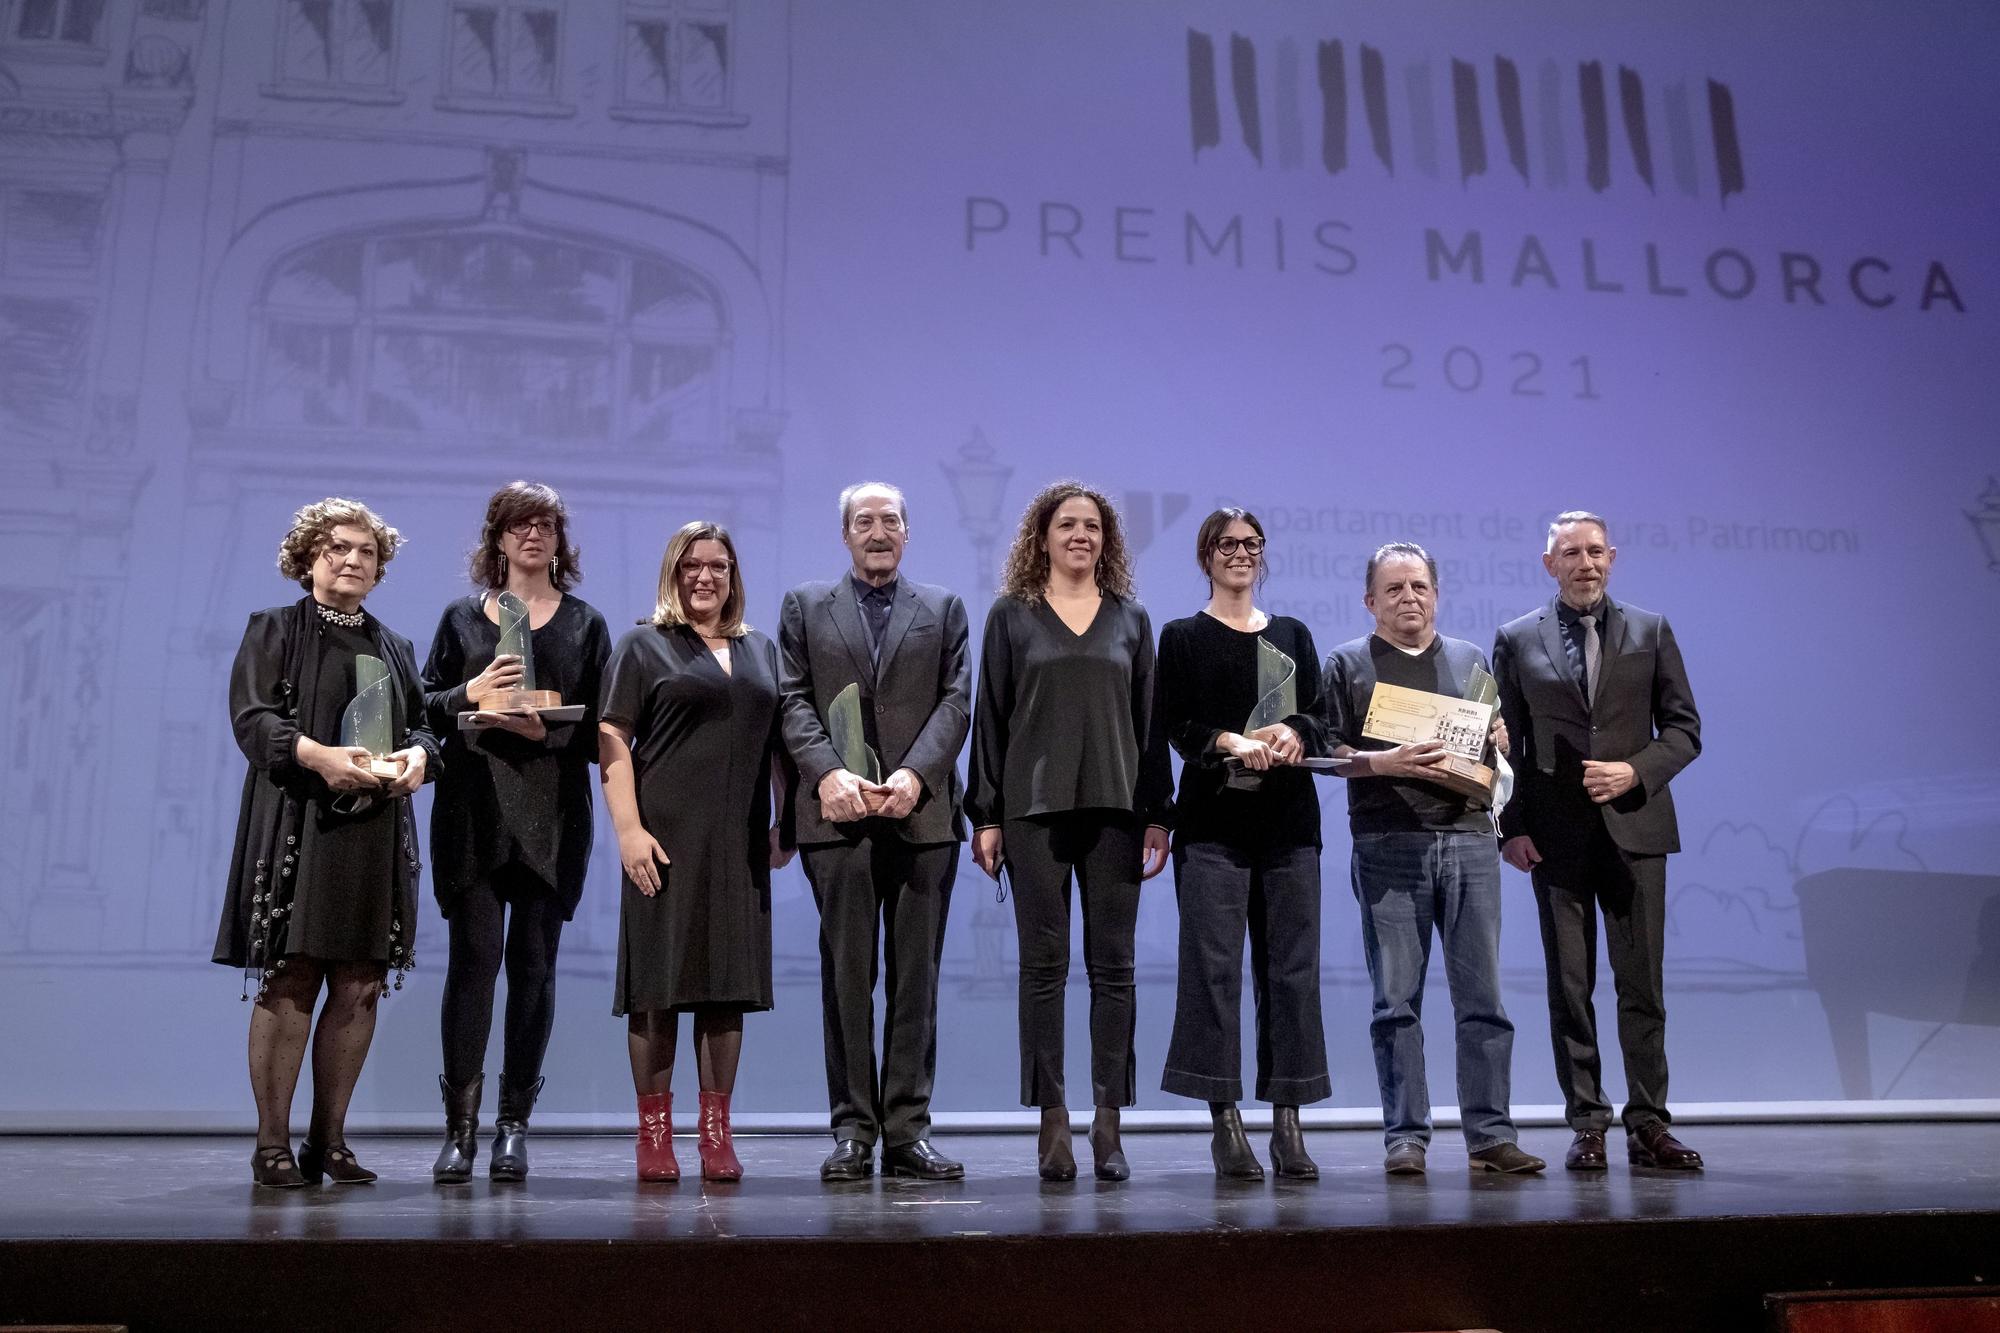 La reivindicación y el ingenio artístico toman el acto de los Premis Mallorca